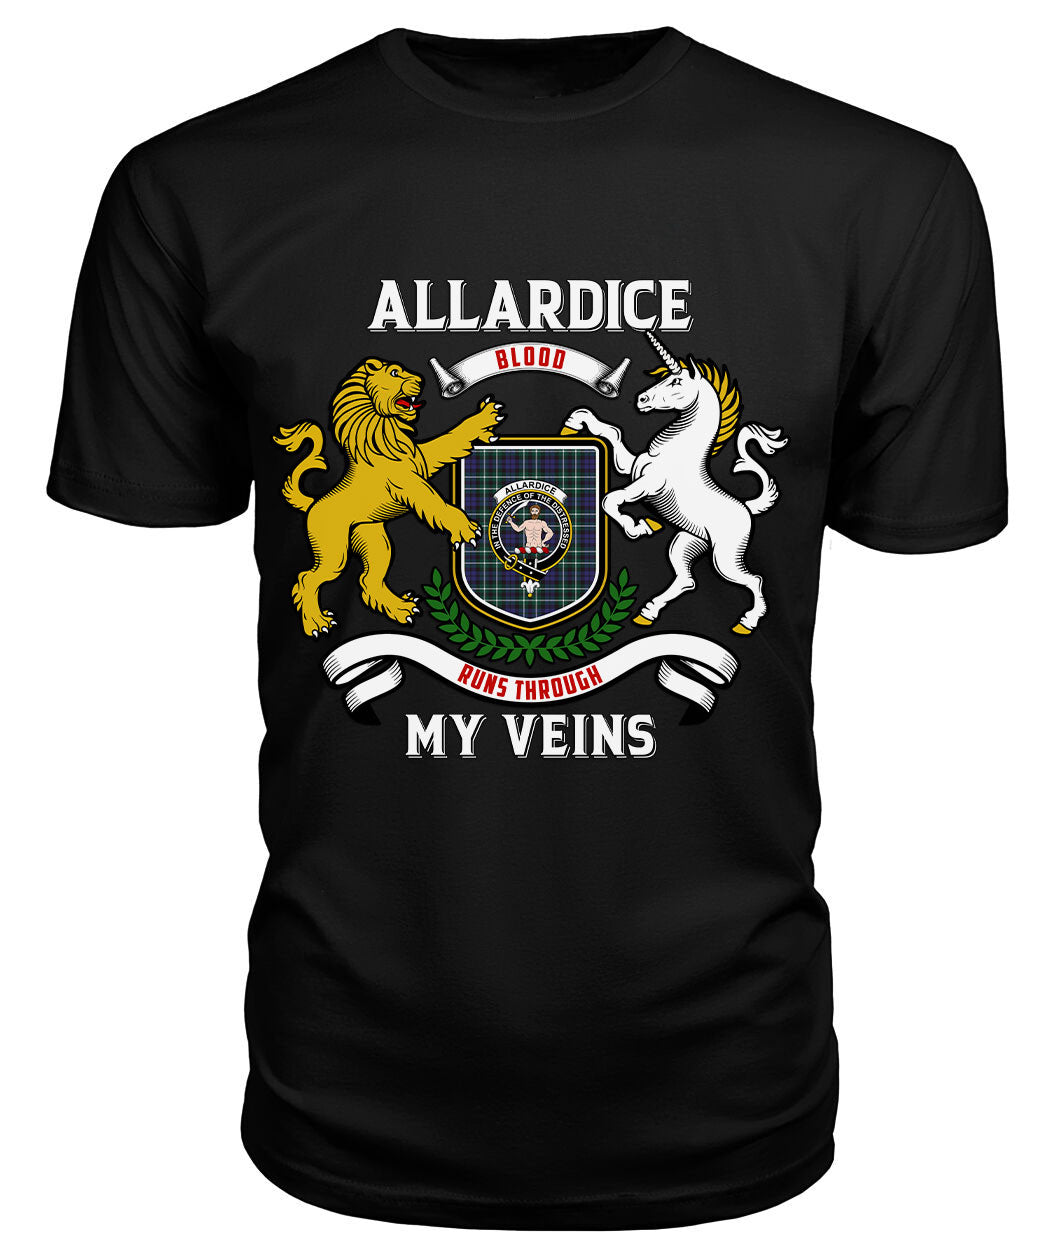 Allardice Tartan Crest 2D T-shirt - Blood Runs Through My Veins Style